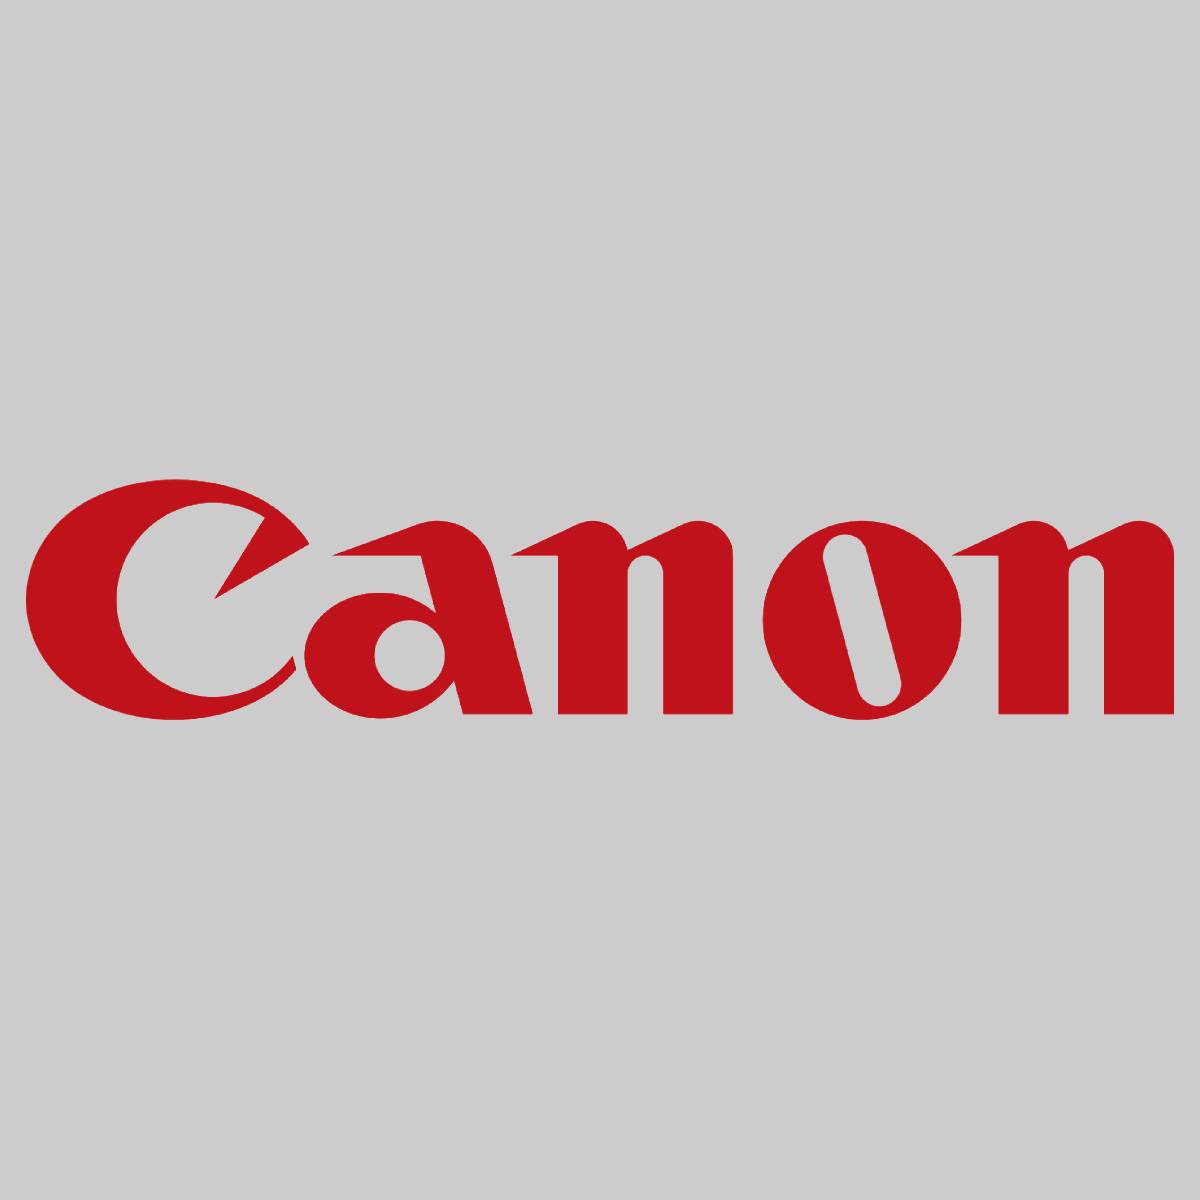 "Original Canon Magenta T01 8068B001 for IP C60 65 600 650 660 700 710 750 800